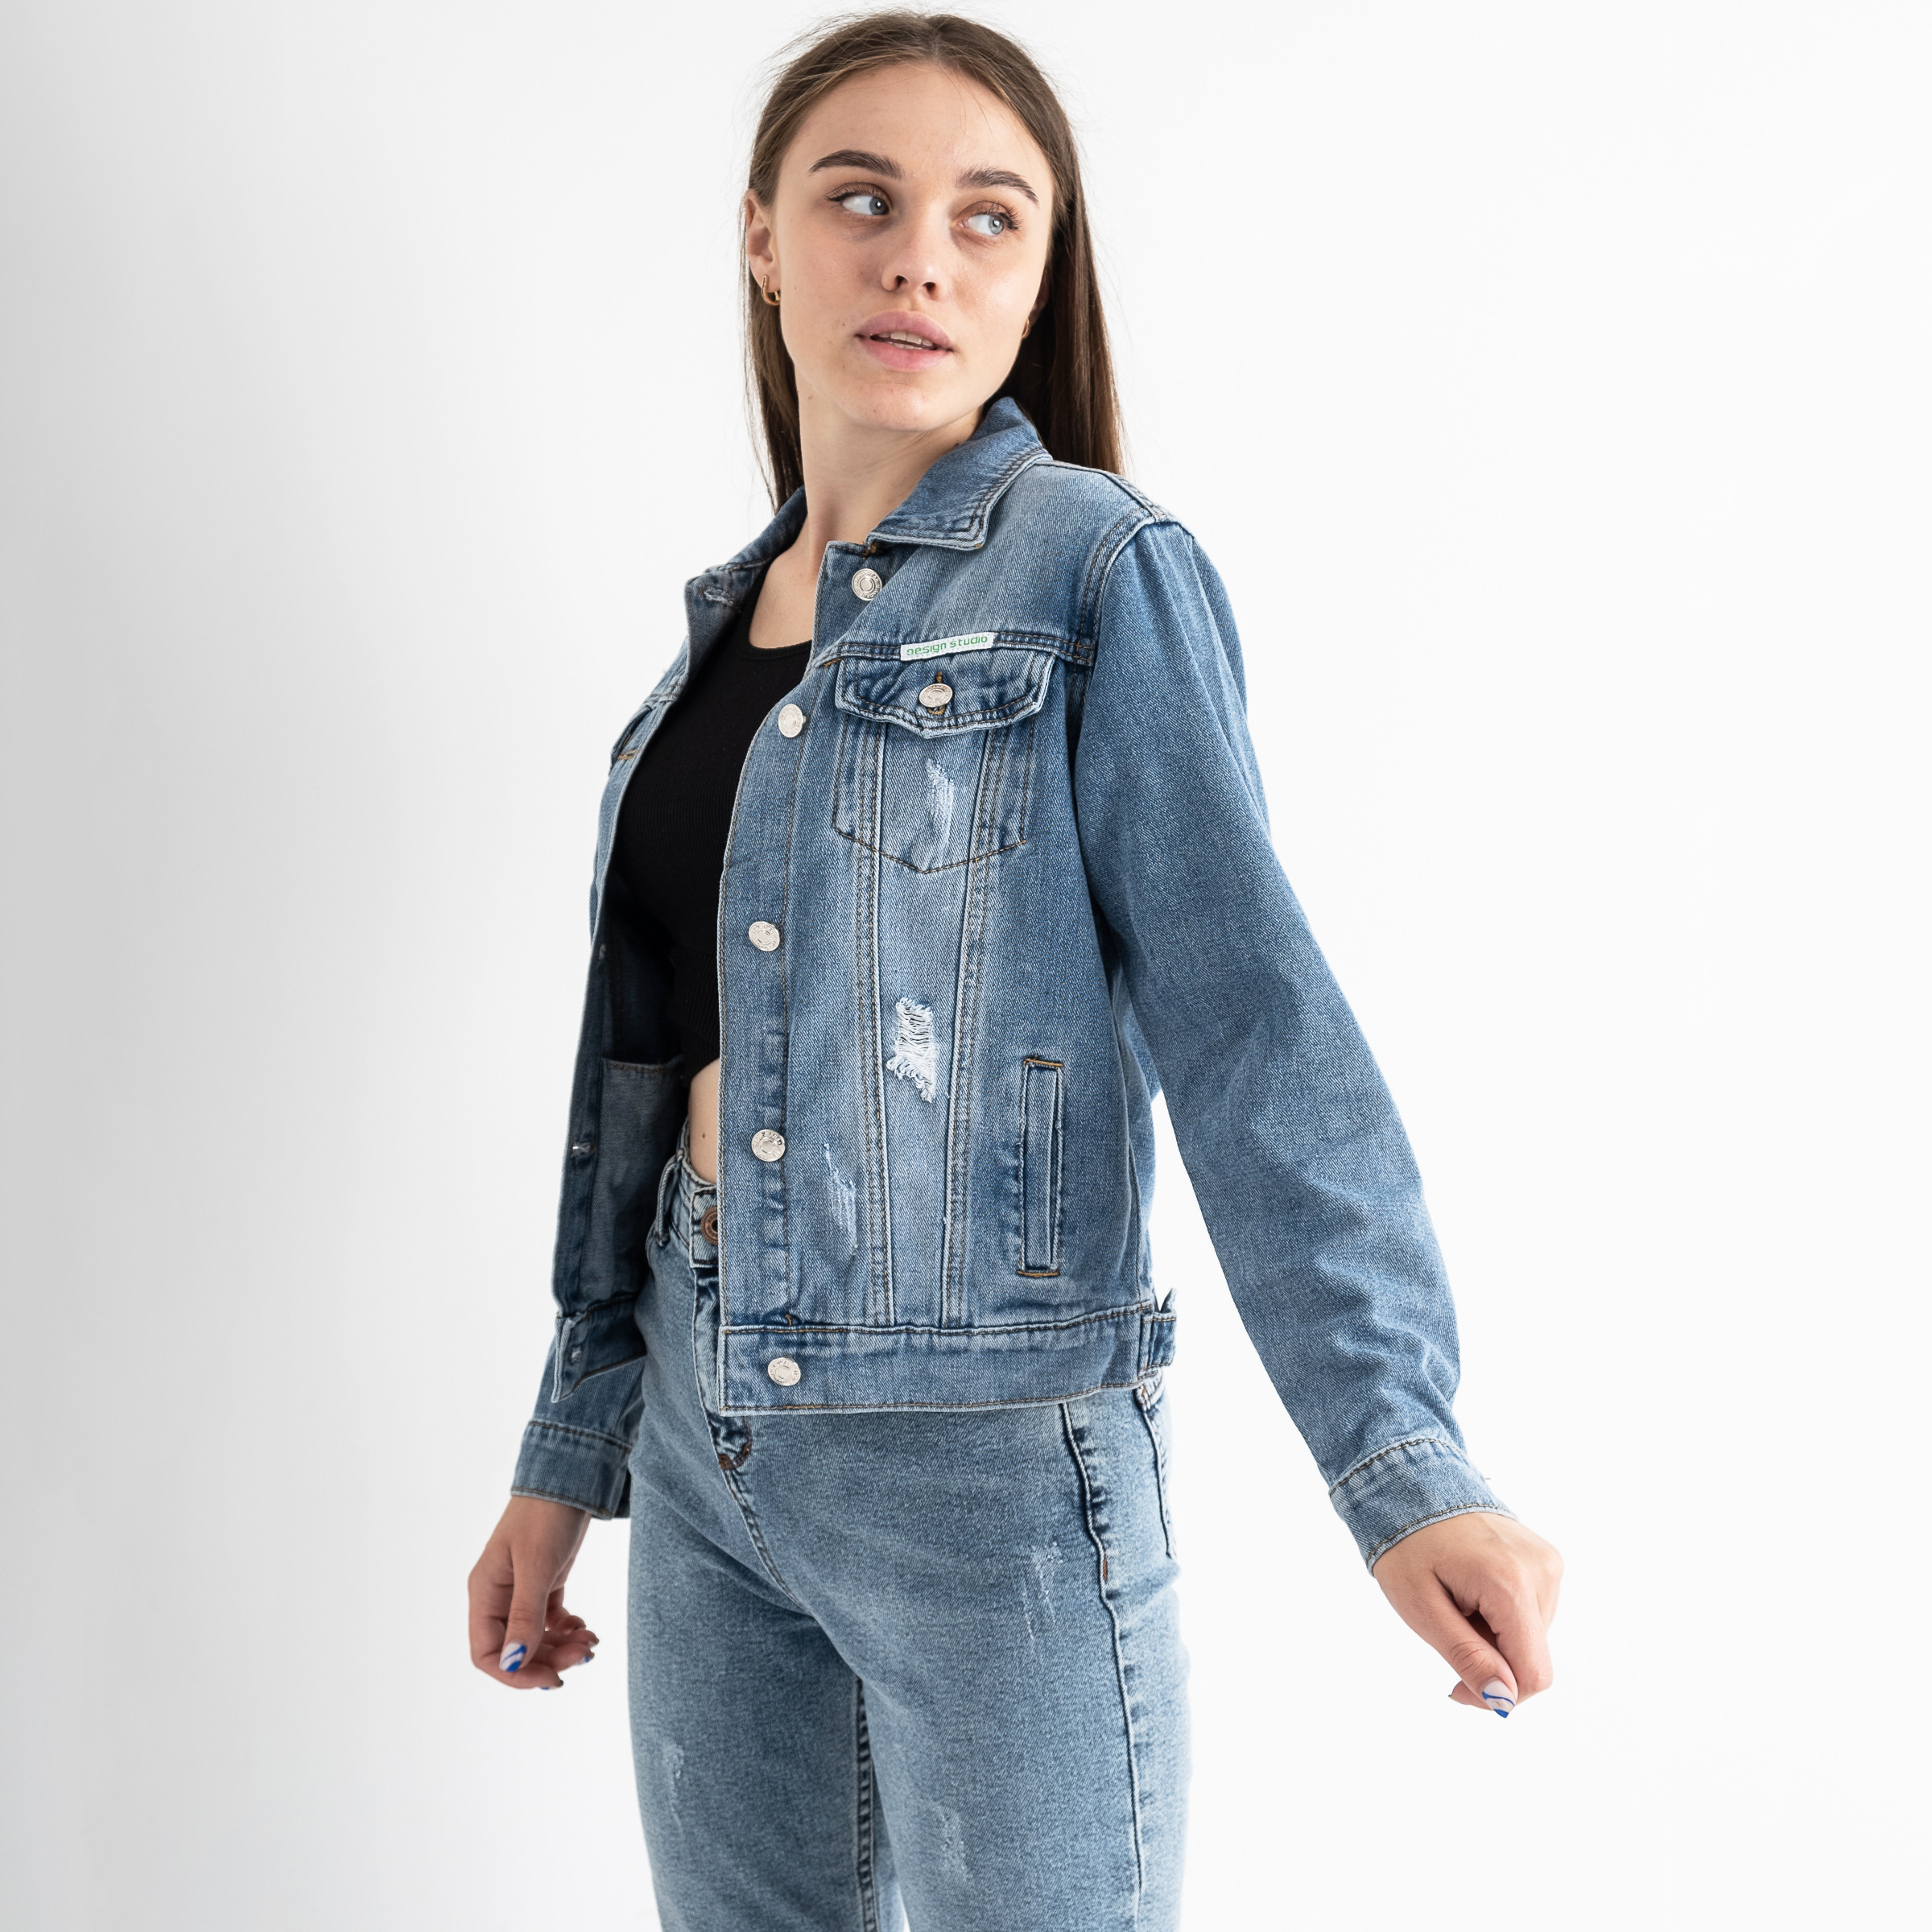 0911 New Jeans джинсовая куртка женская голубая стрейчевая (6 ед. размеры: XS.S.M.L.XL.2XL)